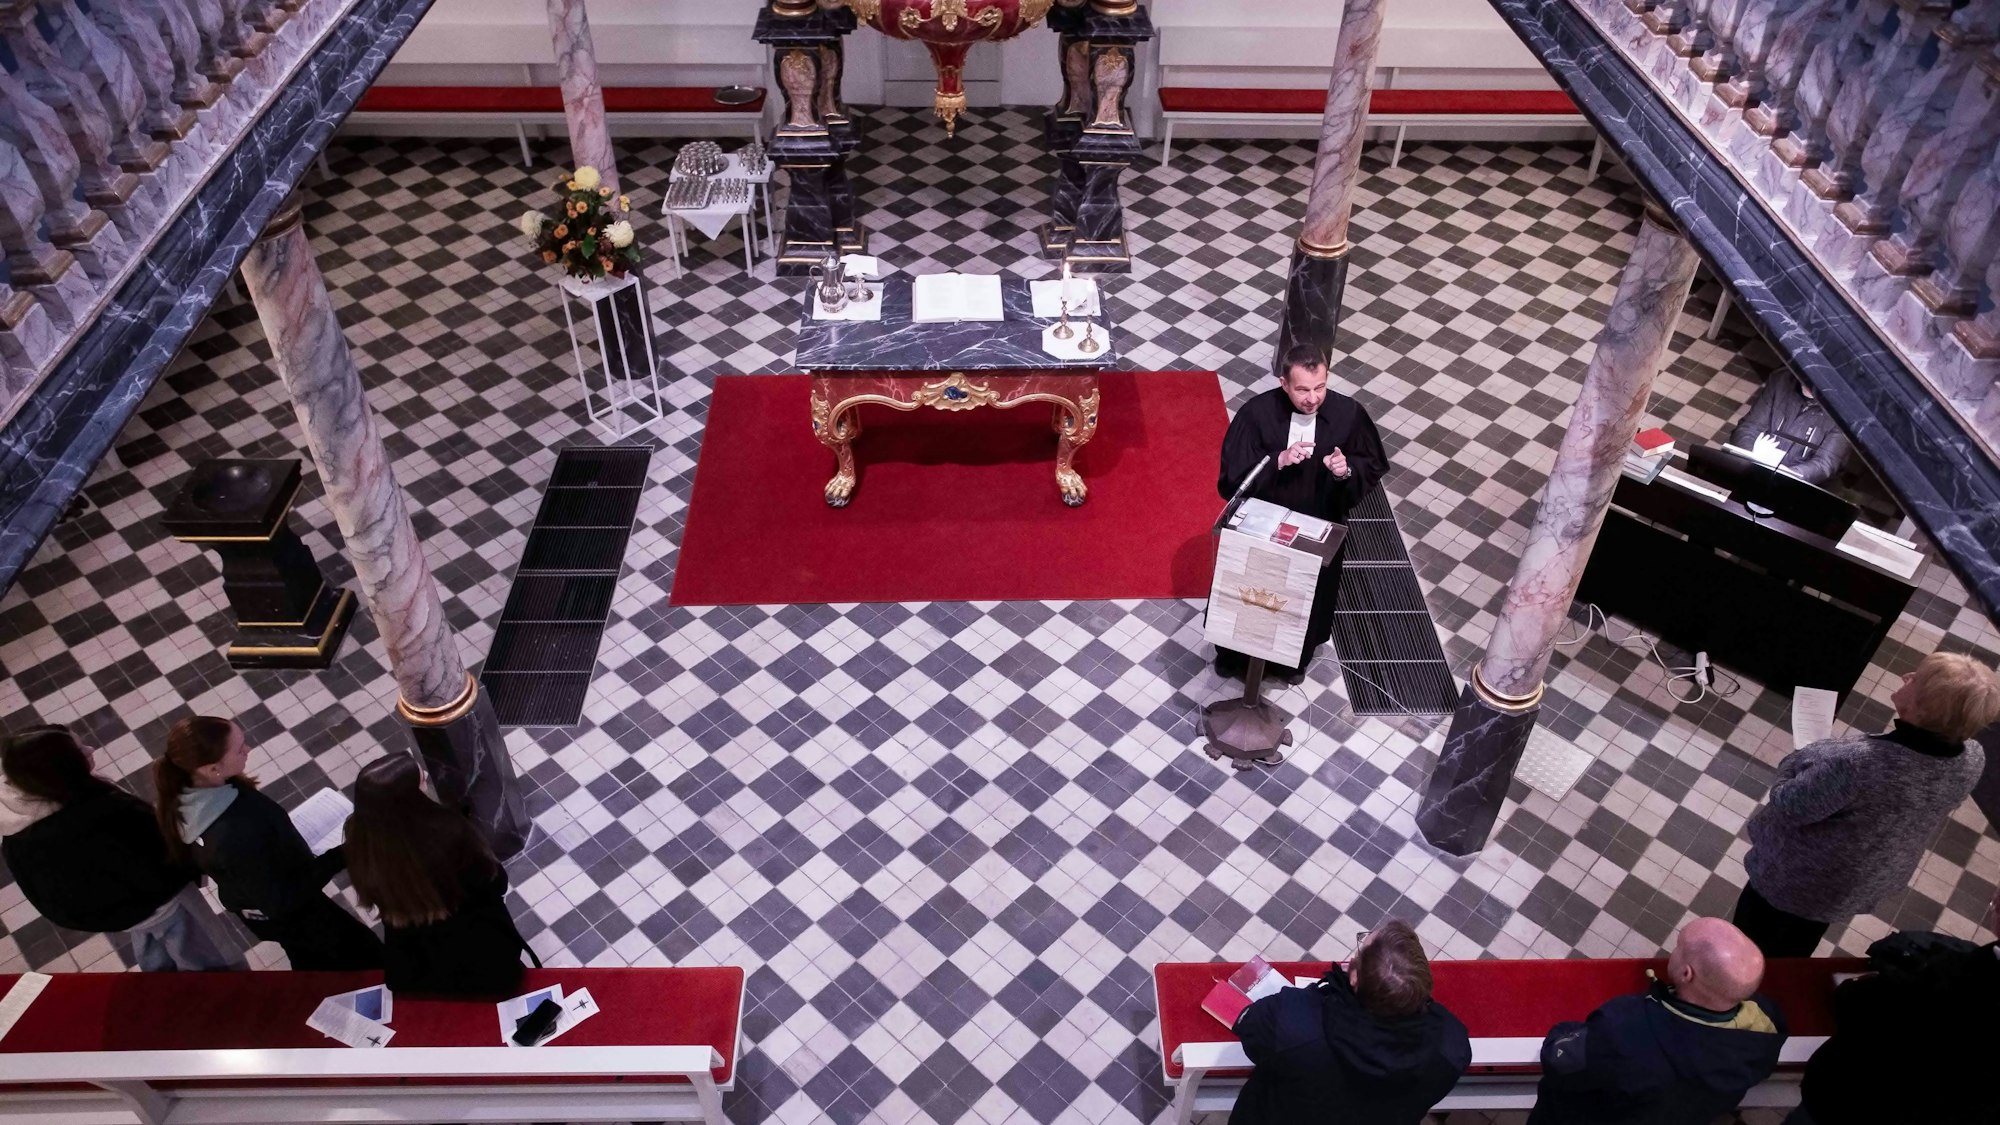 Sicht von einer Orgelempore auf einen Kirchenraum darunter. Ein Pfarrer steht an einem Ambo.